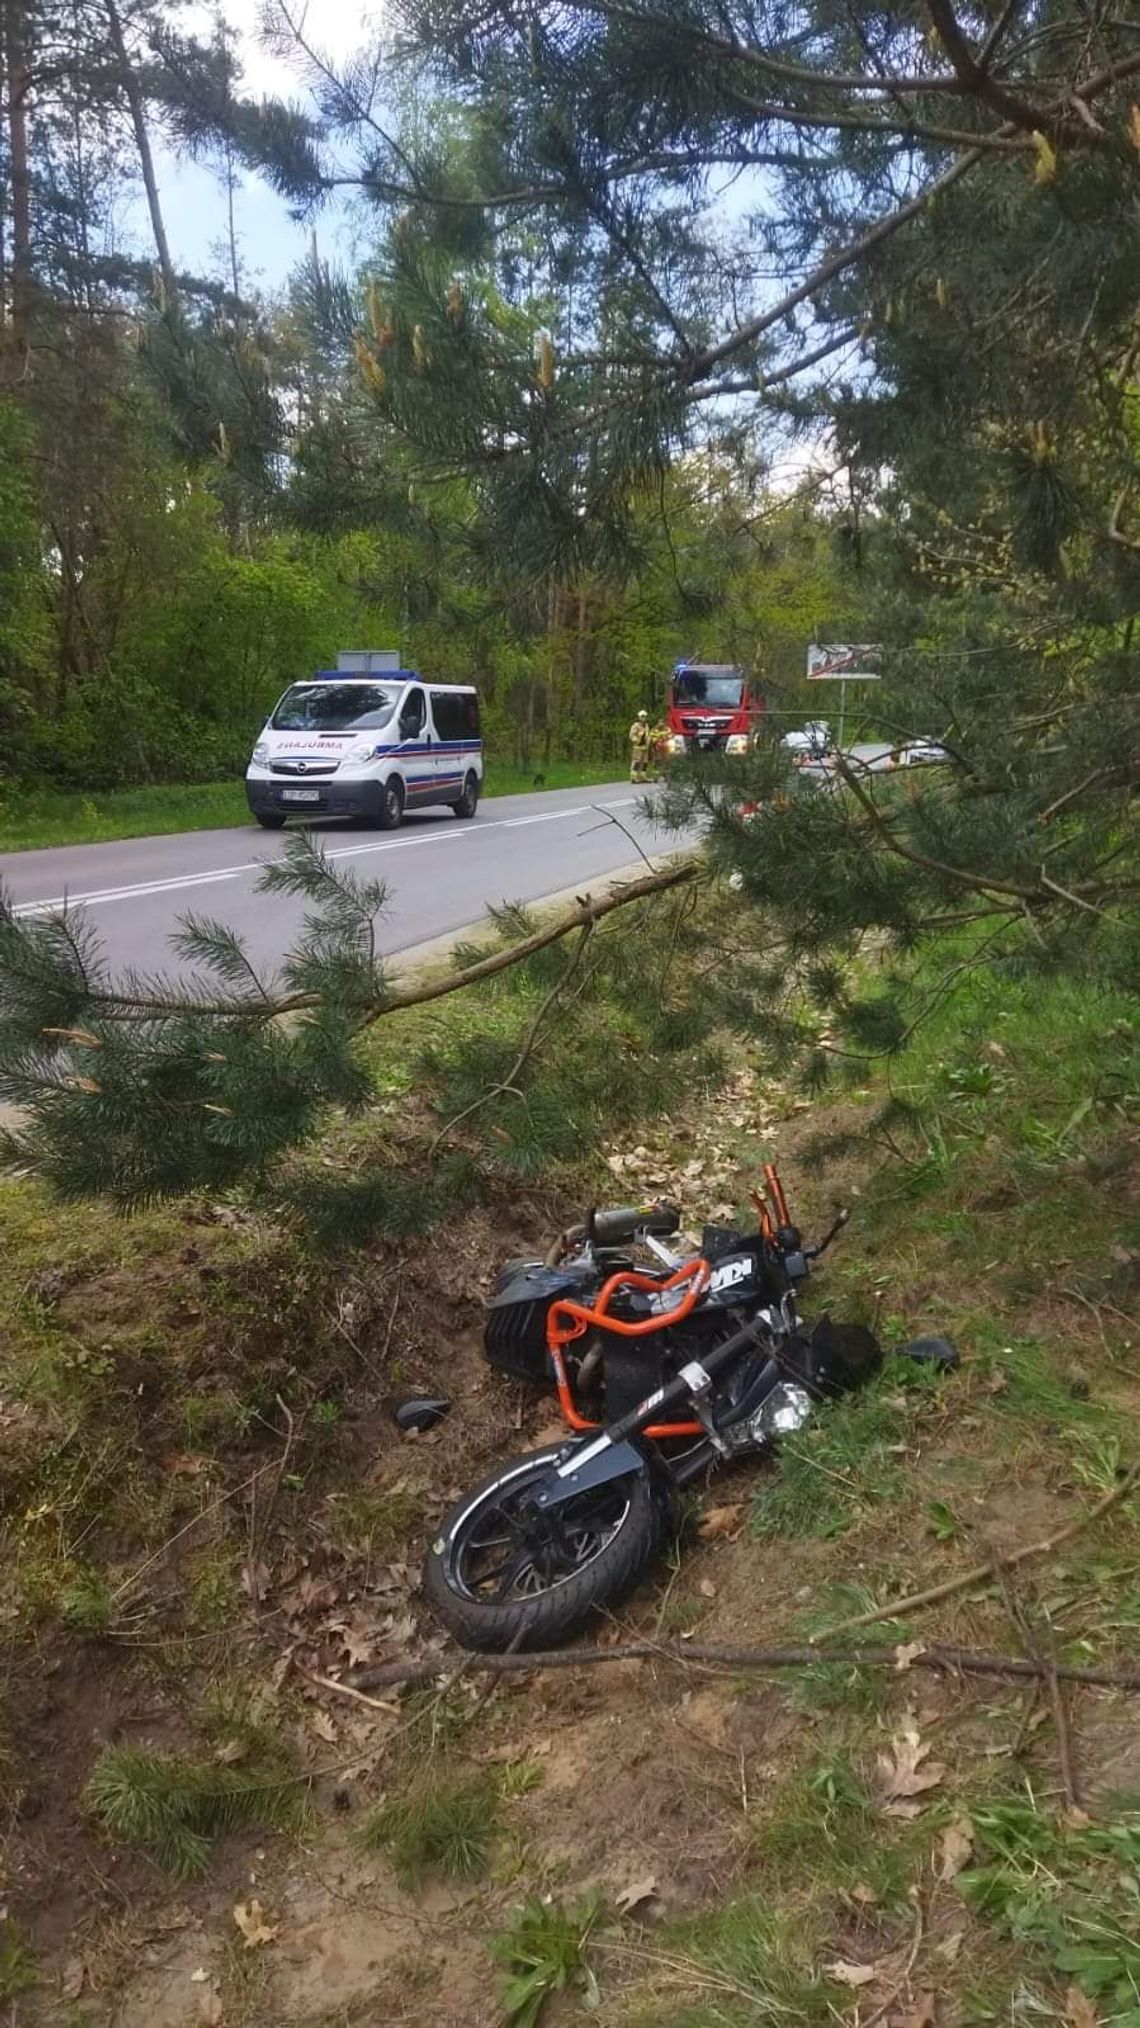 Motocyklista na łuku drogi zjechał z jezdni i uderzył w drzewo. Mężczyzna zginął na miejscu